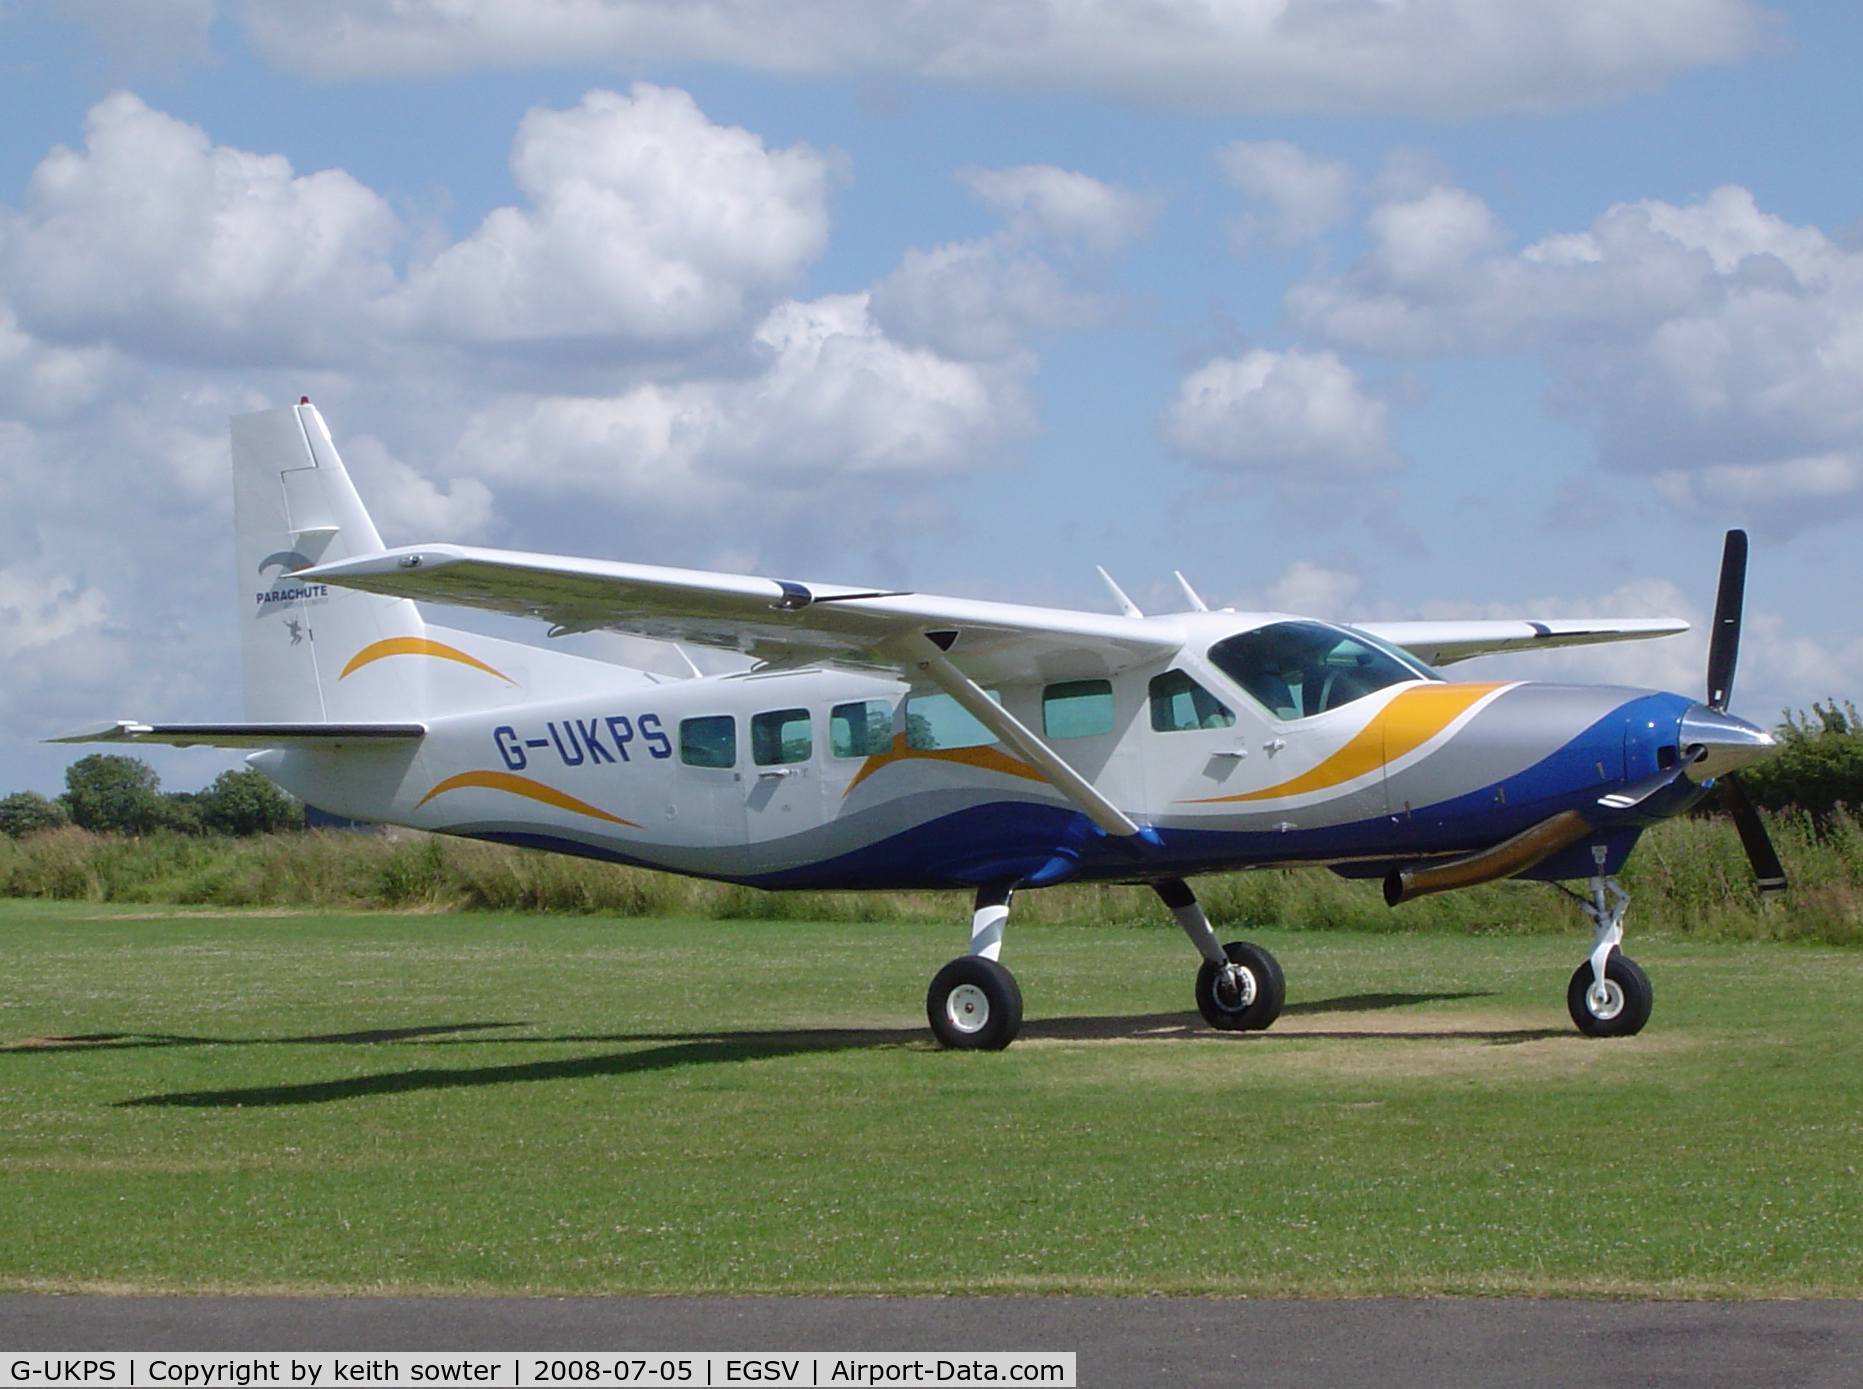 G-UKPS, 2007 Cessna 208 Caravan 1 C/N 20800423, Based aircraft for Para Dropping